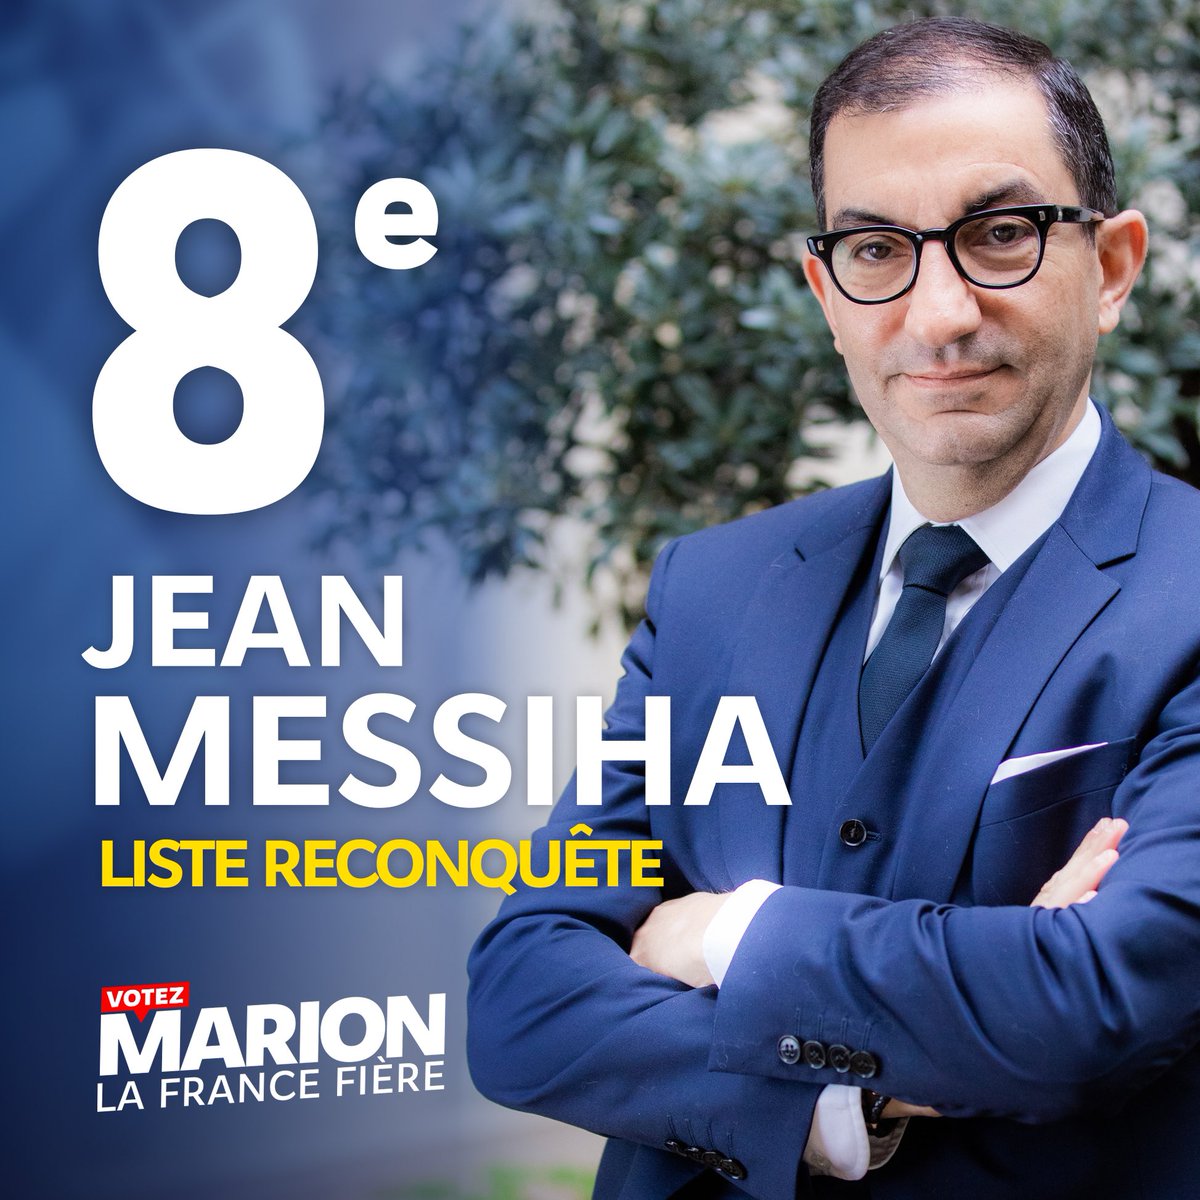 8. @JeanMessiha est président-fondateur de l’institut @Vivre_Francais, ancien haut-fonctionnaire. Il a 53 ans et s’est engagé politiquement dans l’Aisne.